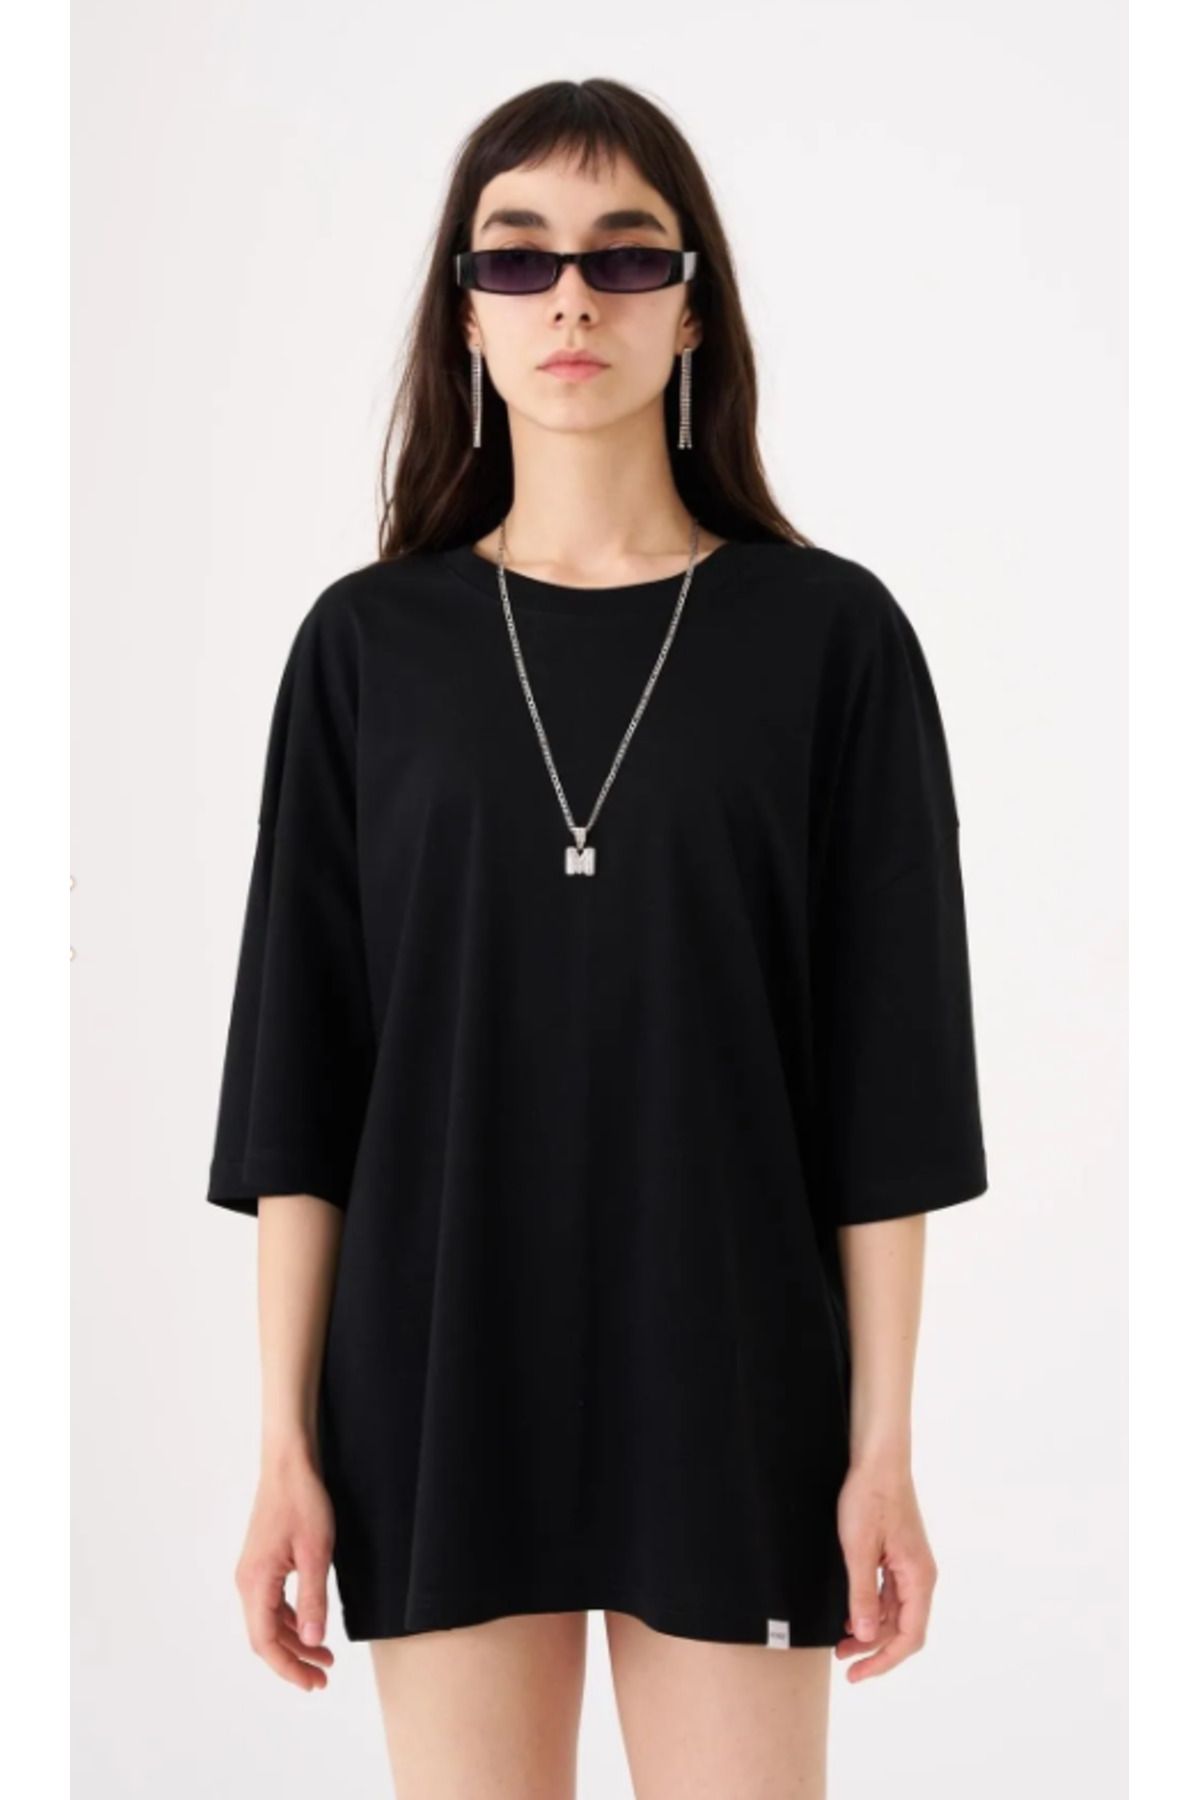 Machinist Kadın Basic Pamuklu Süprem Oversize Siyah Tişört